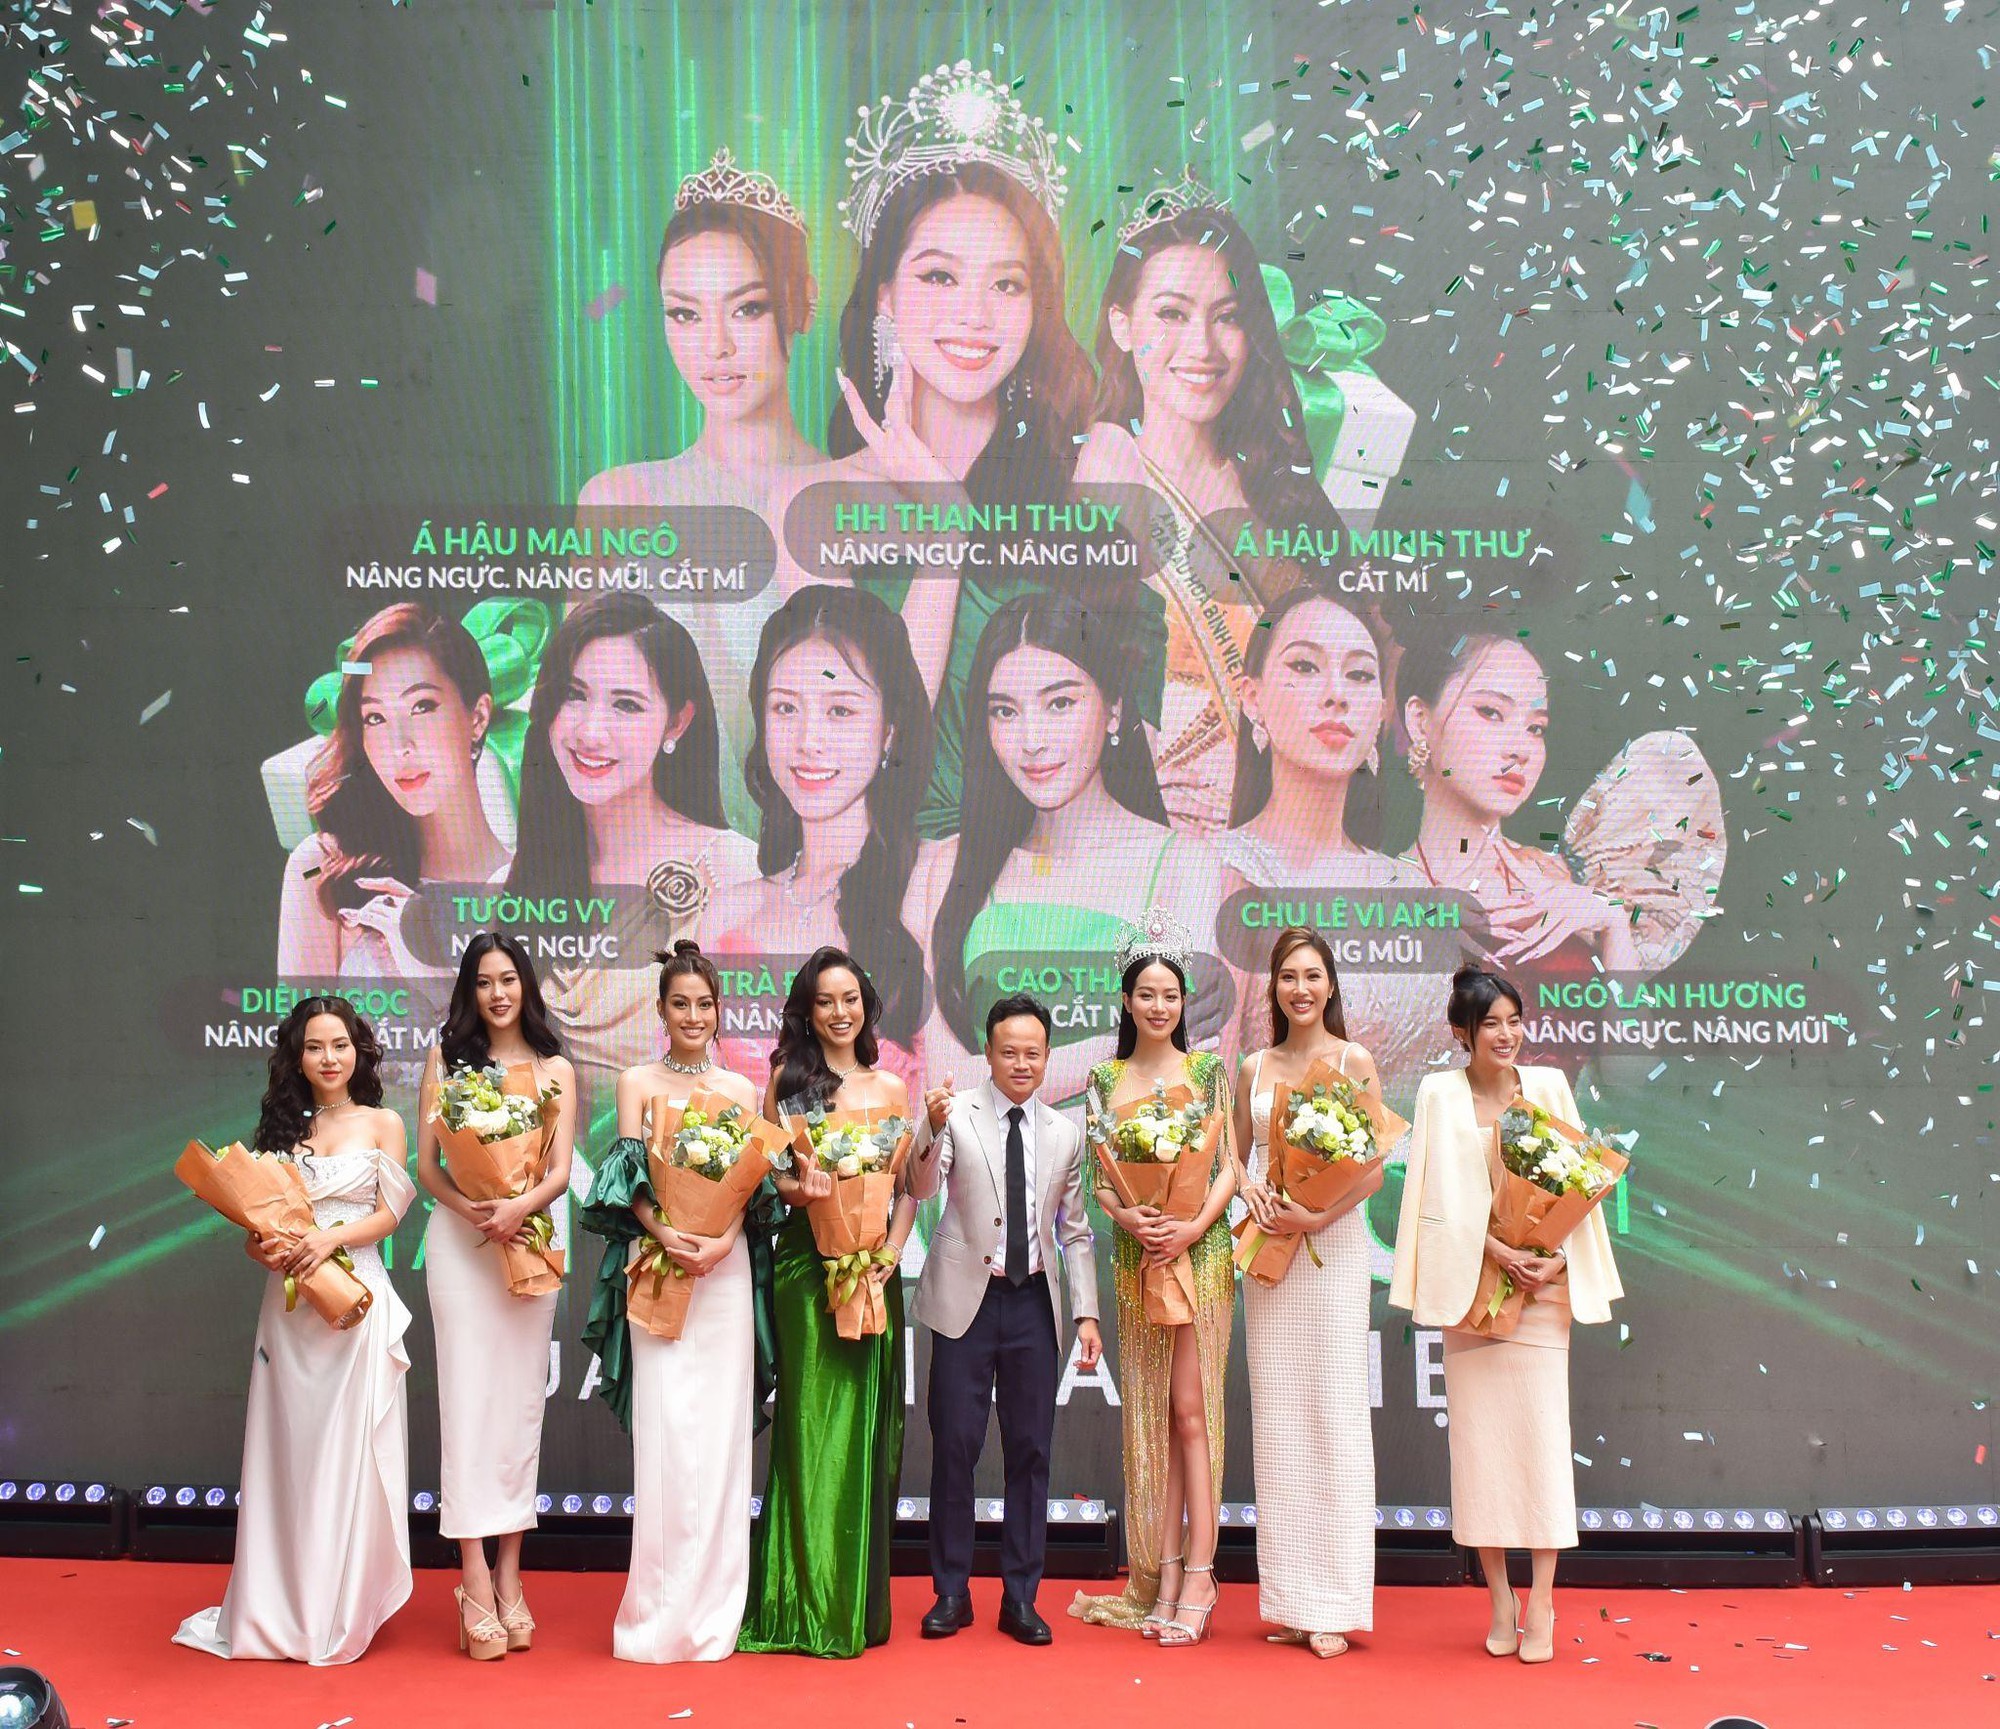 Nhan sắc thăng hạng của Hoa hậu Thanh Thủy tại siêu sinh nhật Thu Cúc - Ảnh 2.